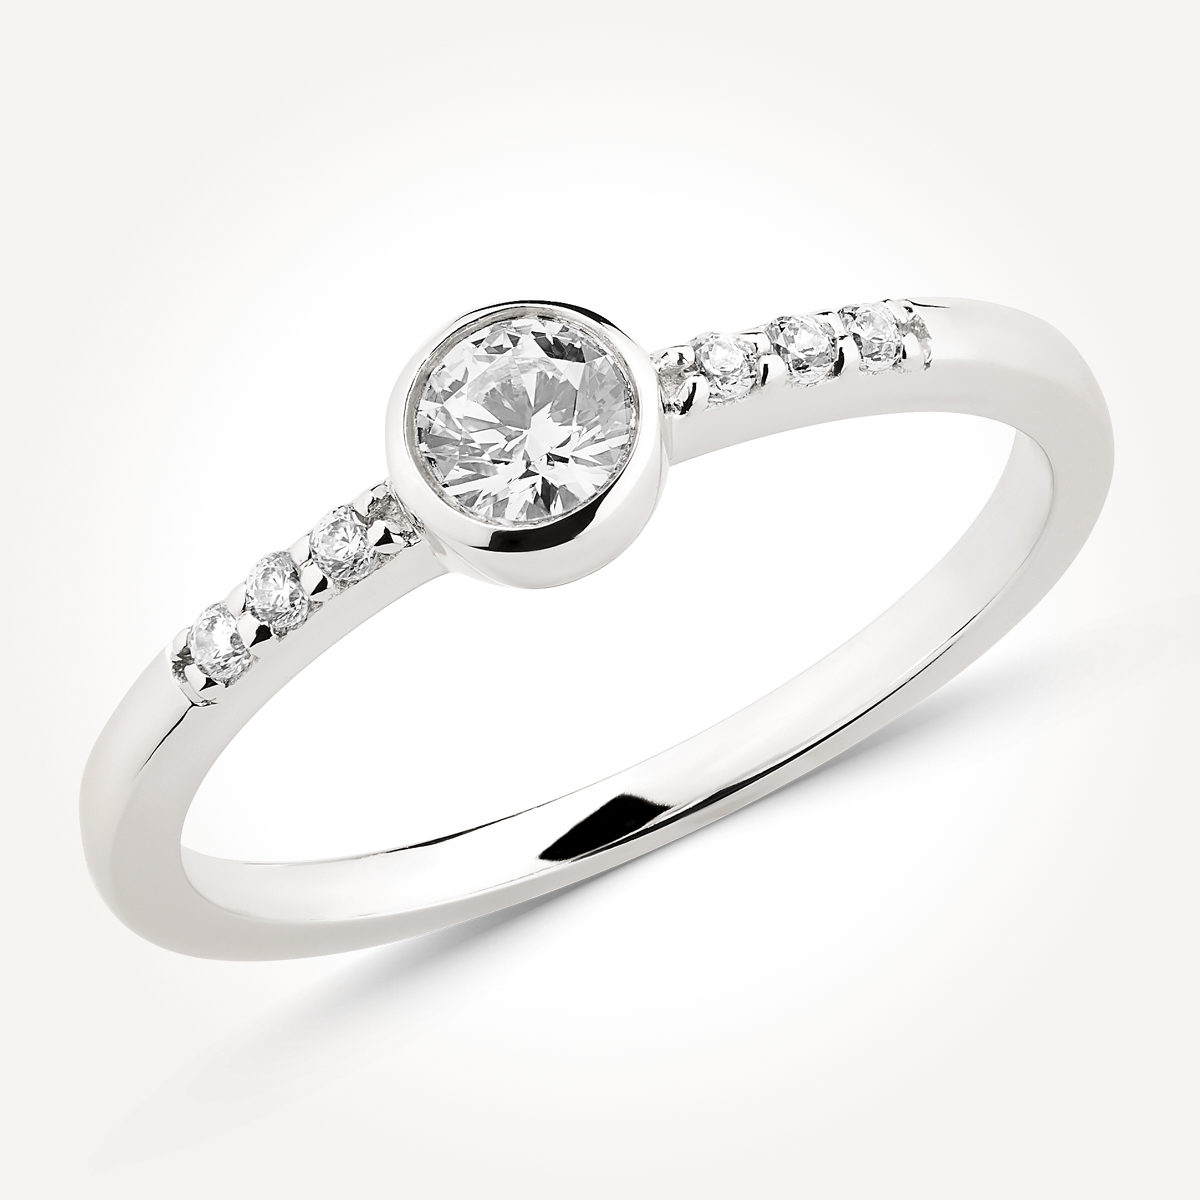 14KT White Gold Bezel Set Diamond Ring